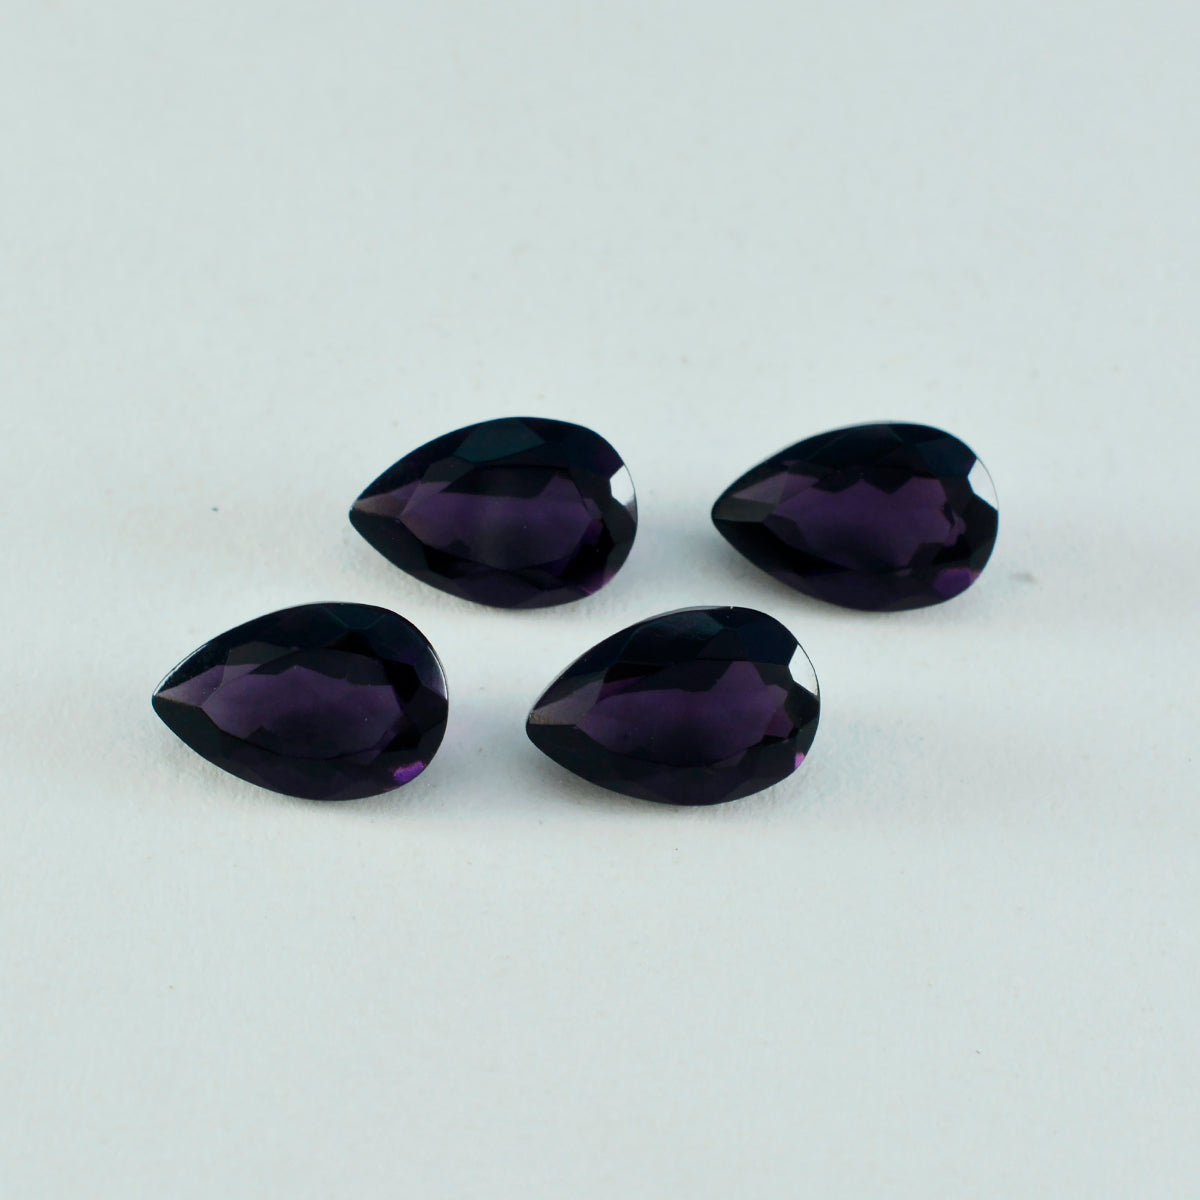 Riyogems 1 Stück violetter Amethyst, CZ, facettiert, 8 x 12 mm, Birnenform, A+-Qualität, lose Edelsteine